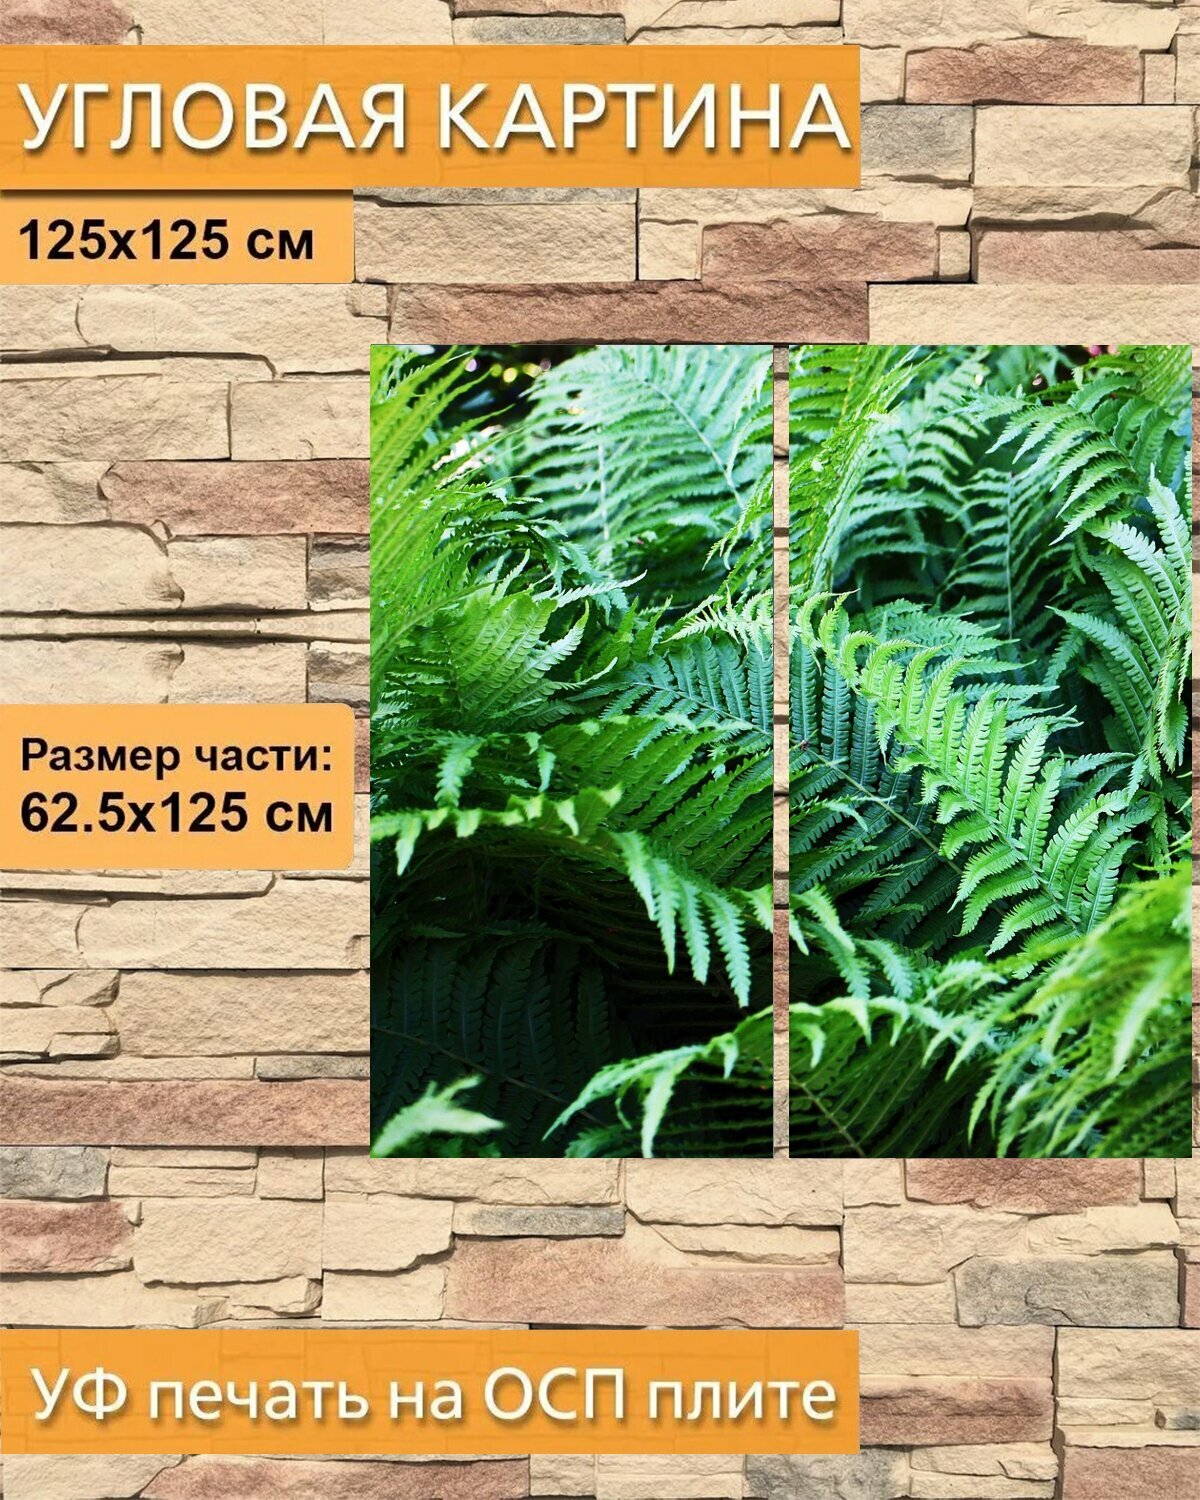 Модульная картина на ОСП "Папоротник, листья папоротника, растение папоротник" 125x125 см. 2 части для интерьера на стену